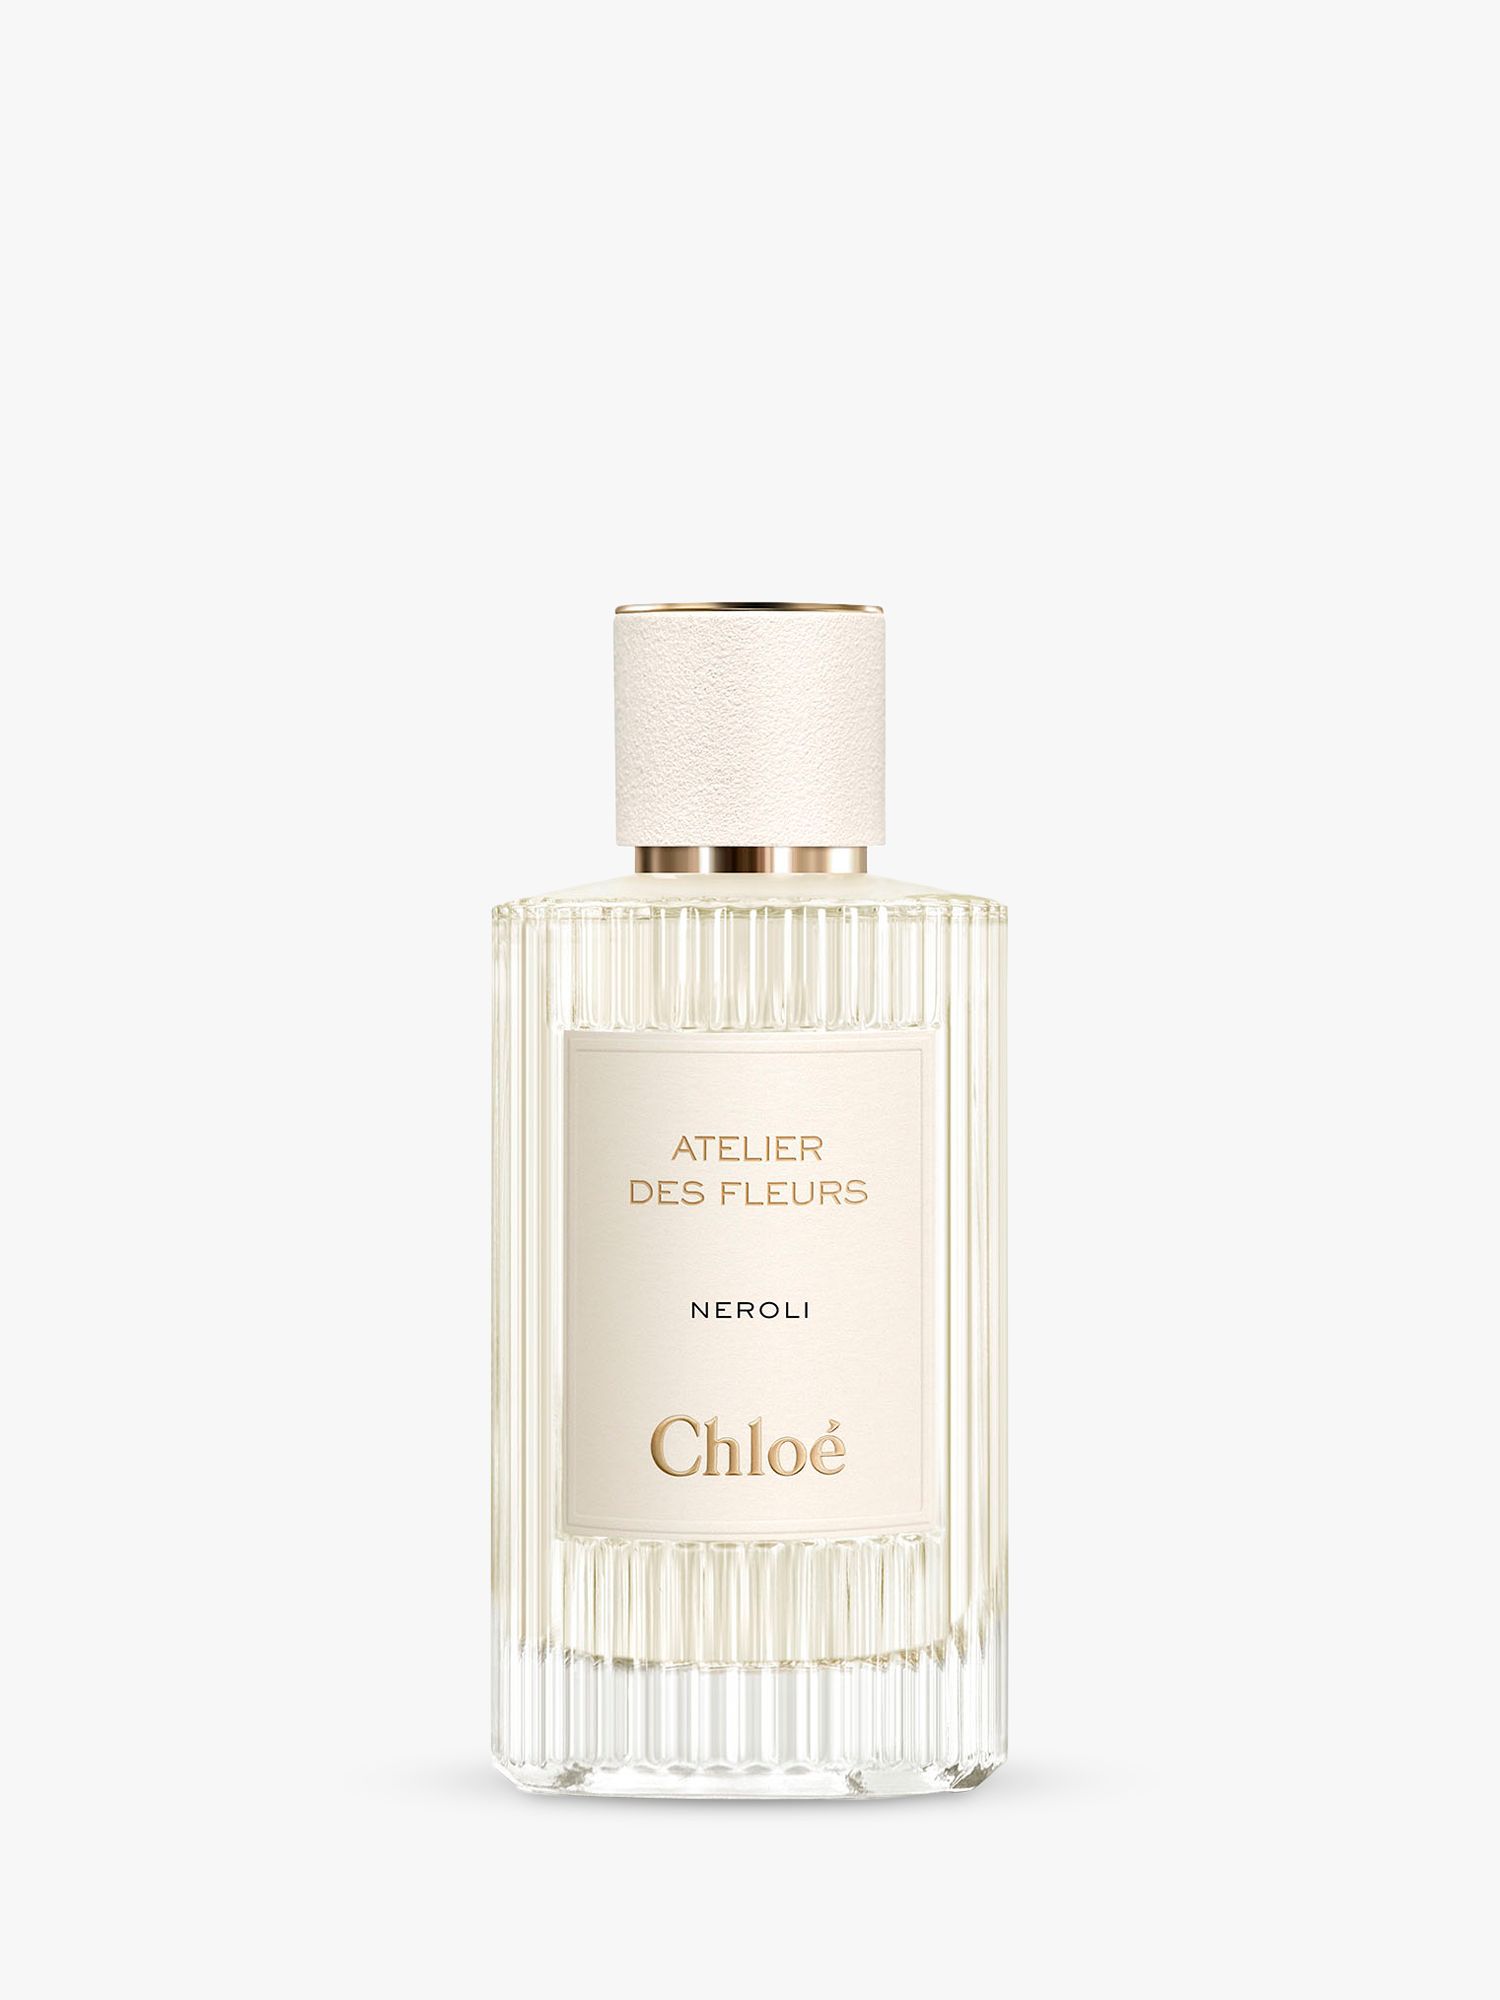 Chloé Atelier des Fleurs Neroli Eau de Parfum, 150ml 1